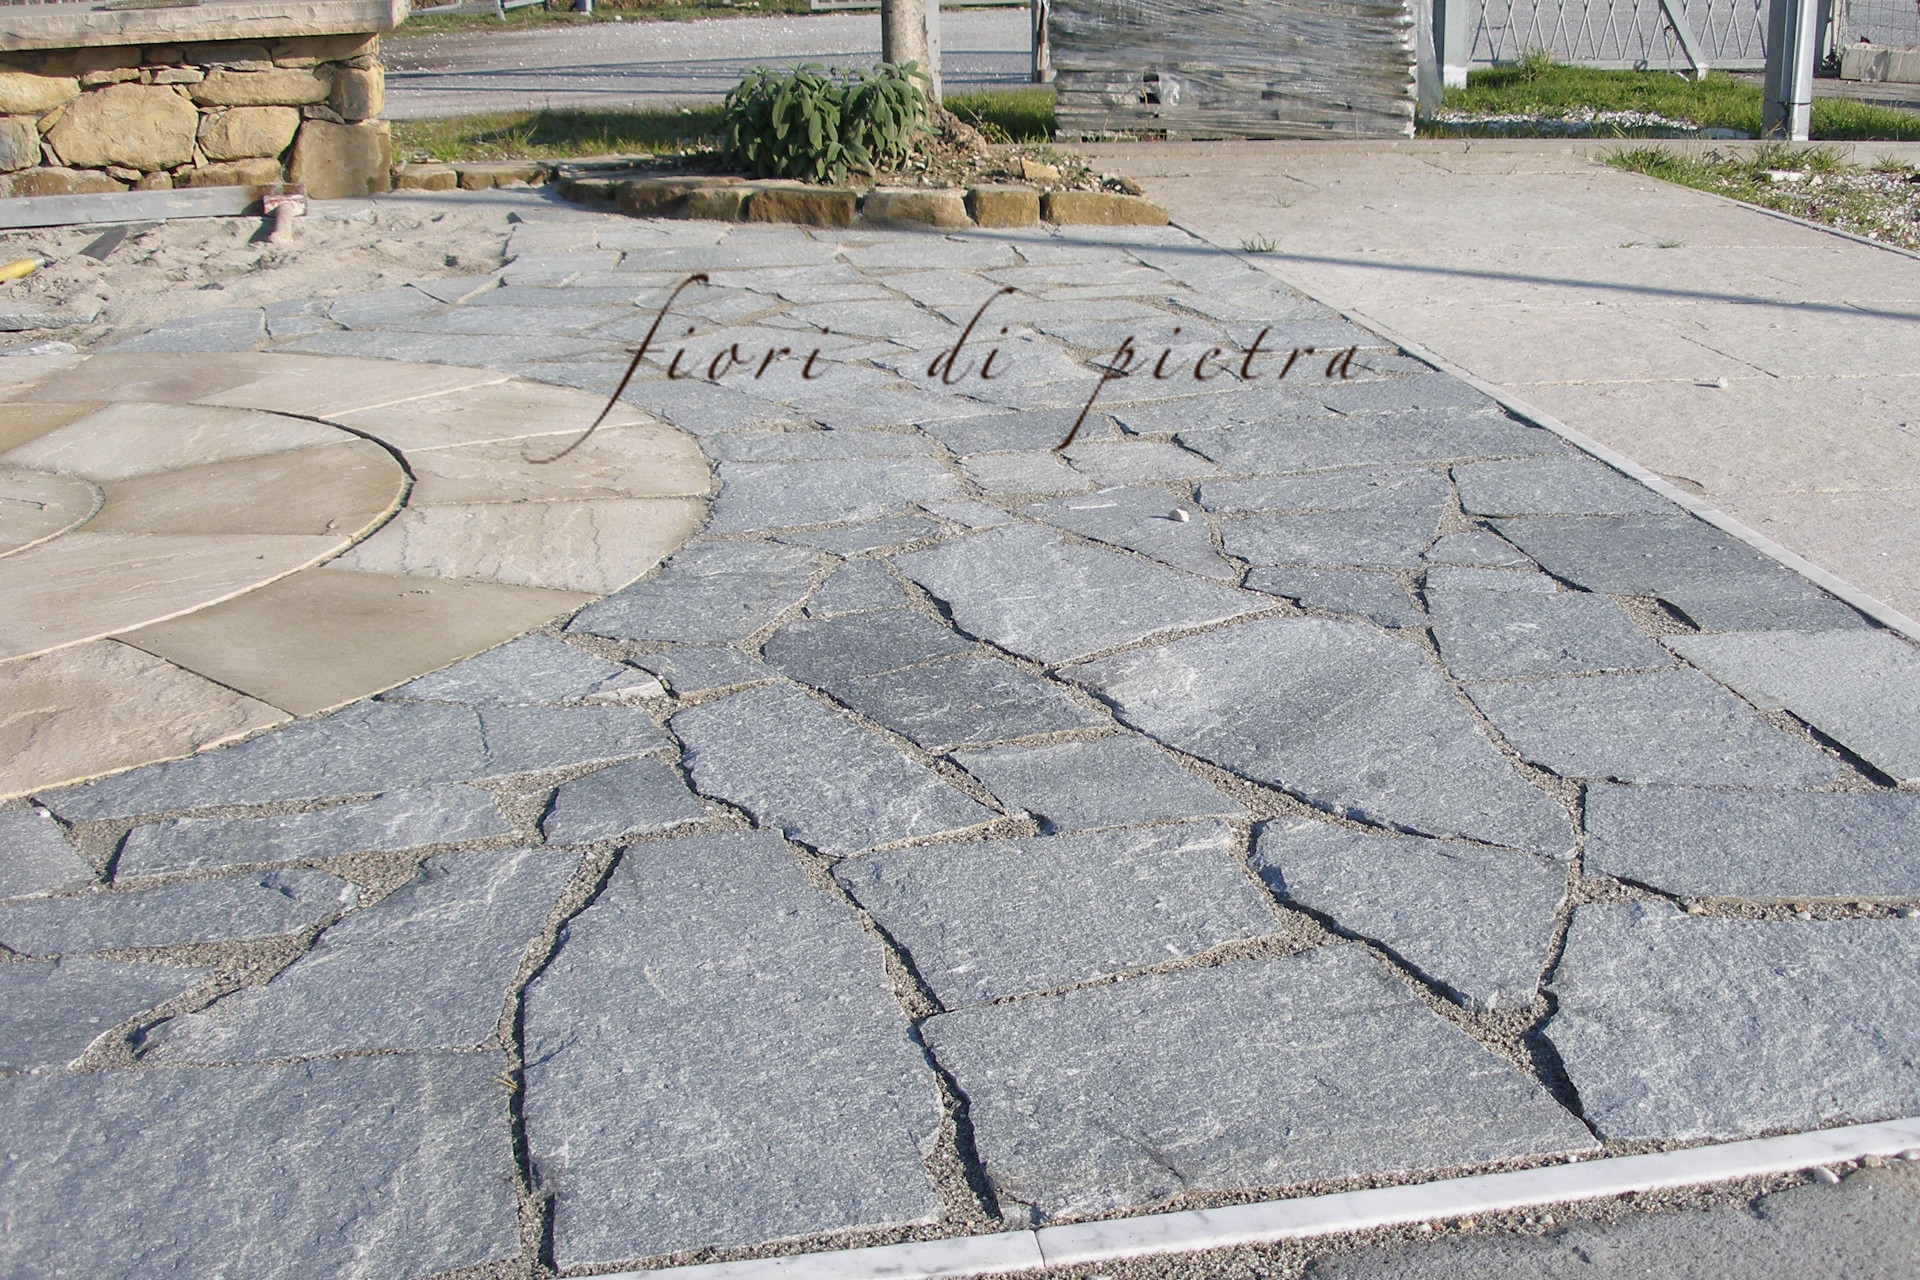 Projects Pavimenti da €34,00 al mq + iva with GRIGIO APUANO stone